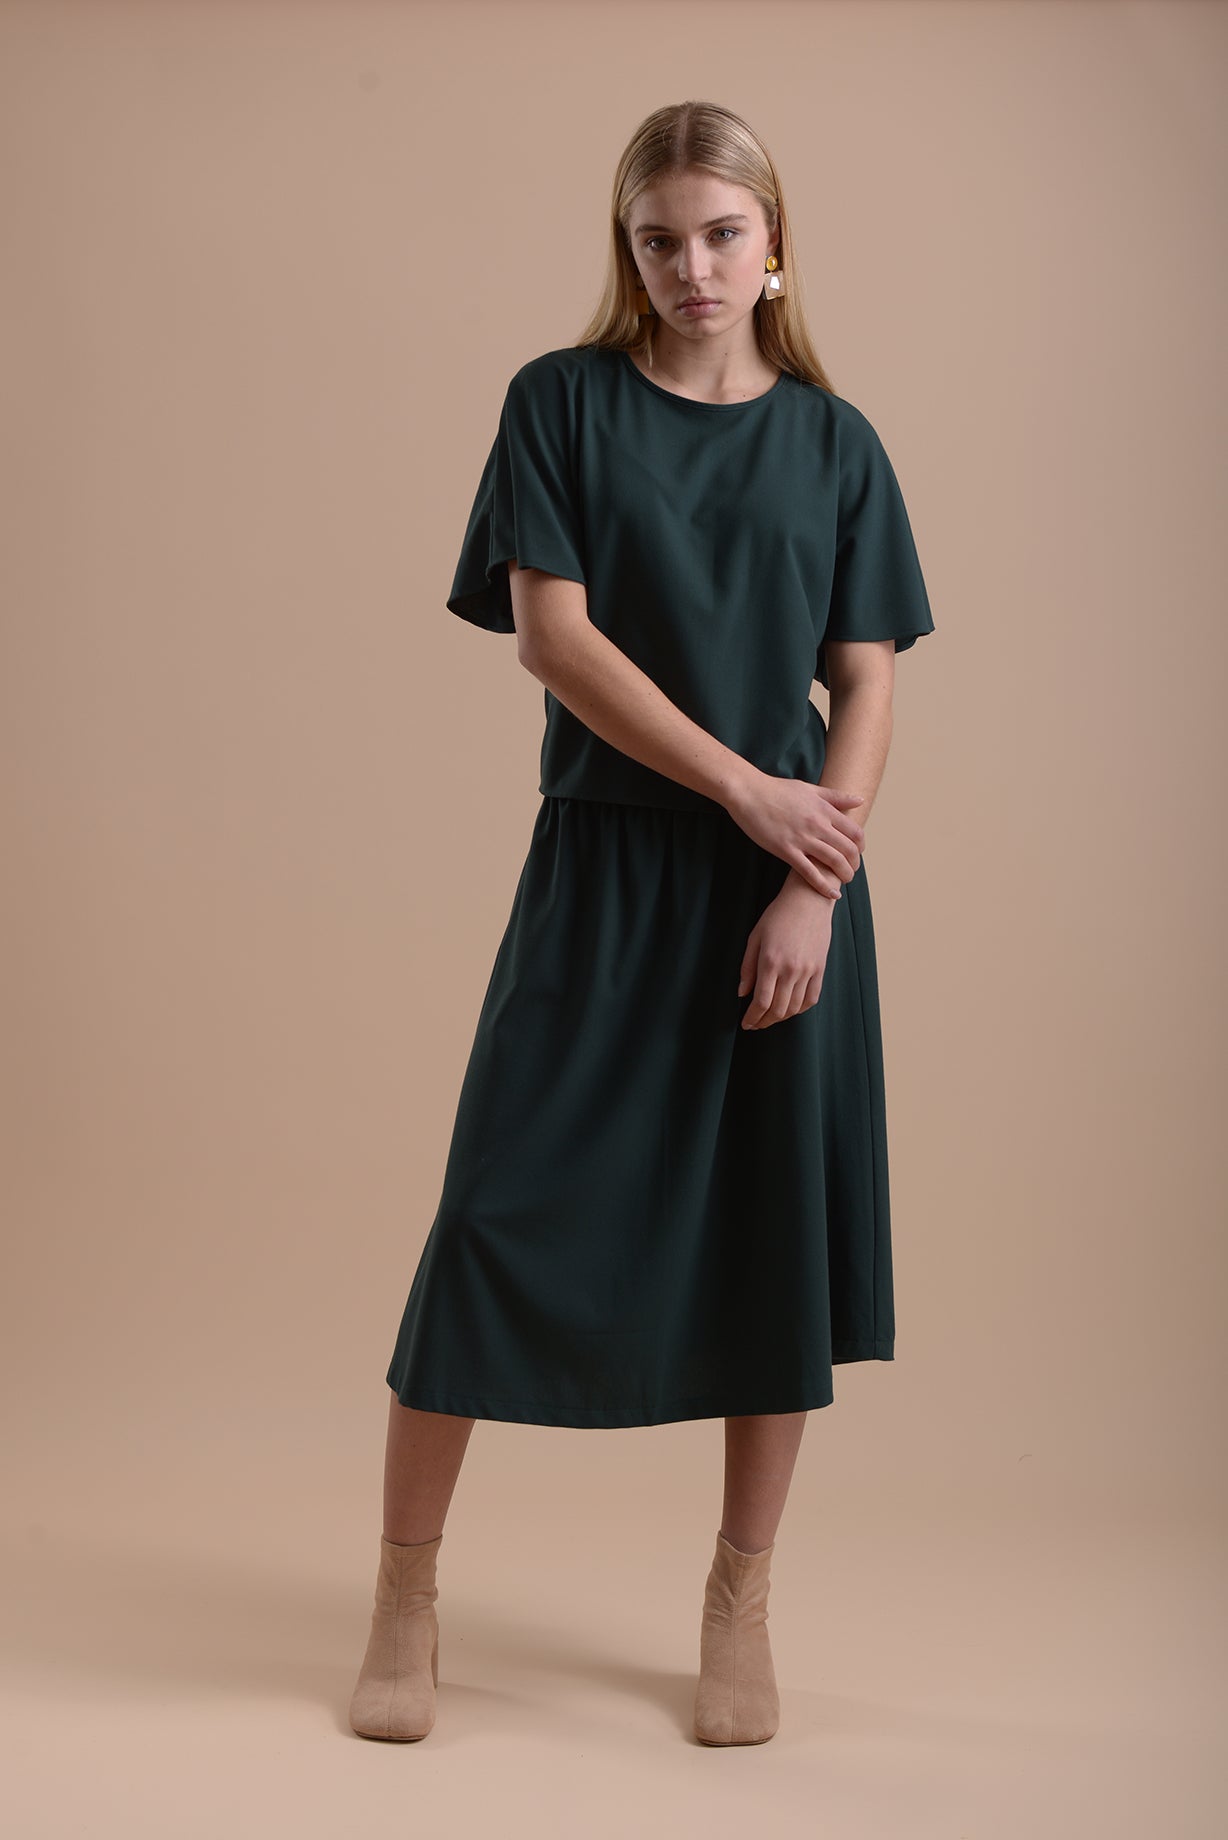 Skirt 1 Medium Length Skirt | Green